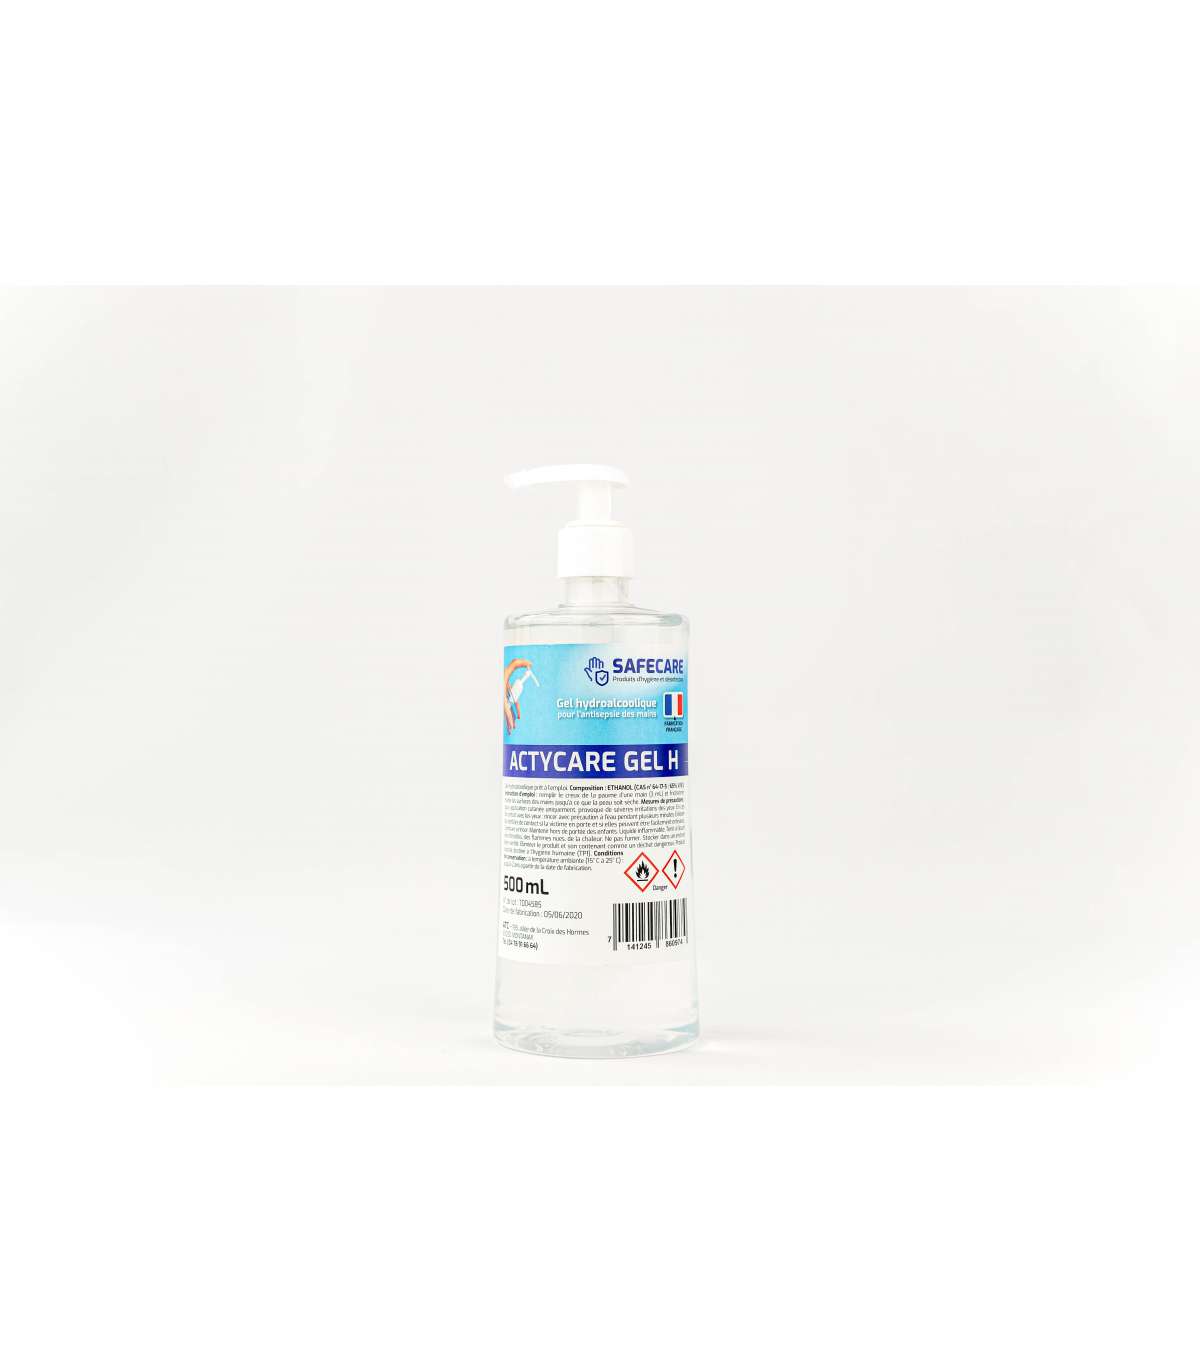 Solution Hydroalcoolique 5 L - Hygiène / désinfection